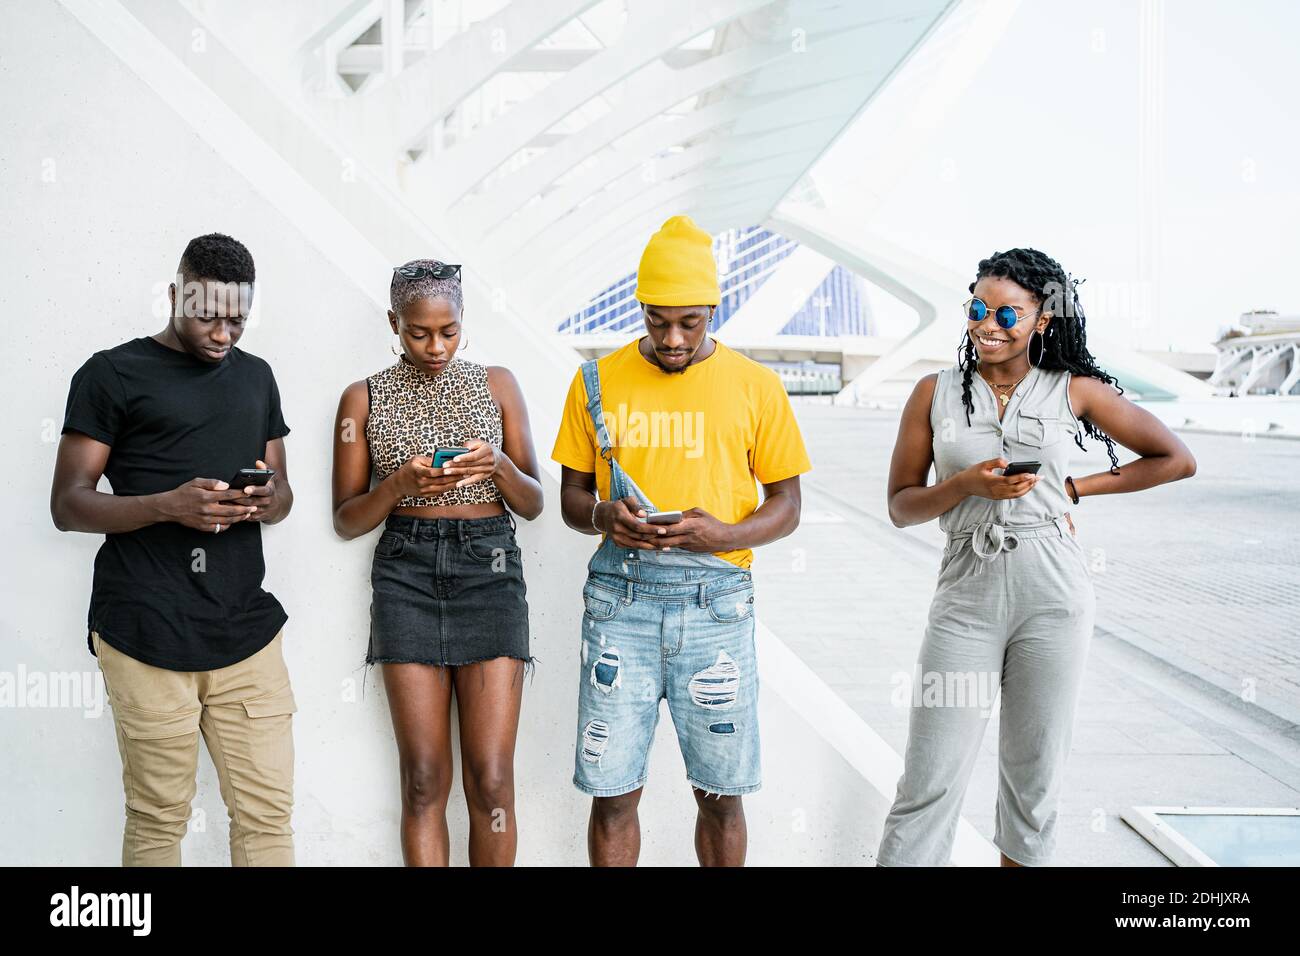 Jeunes gens noirs dans des vêtements élégants debout en zone urbaine et la messagerie sur les réseaux sociaux via les smartphones Banque D'Images